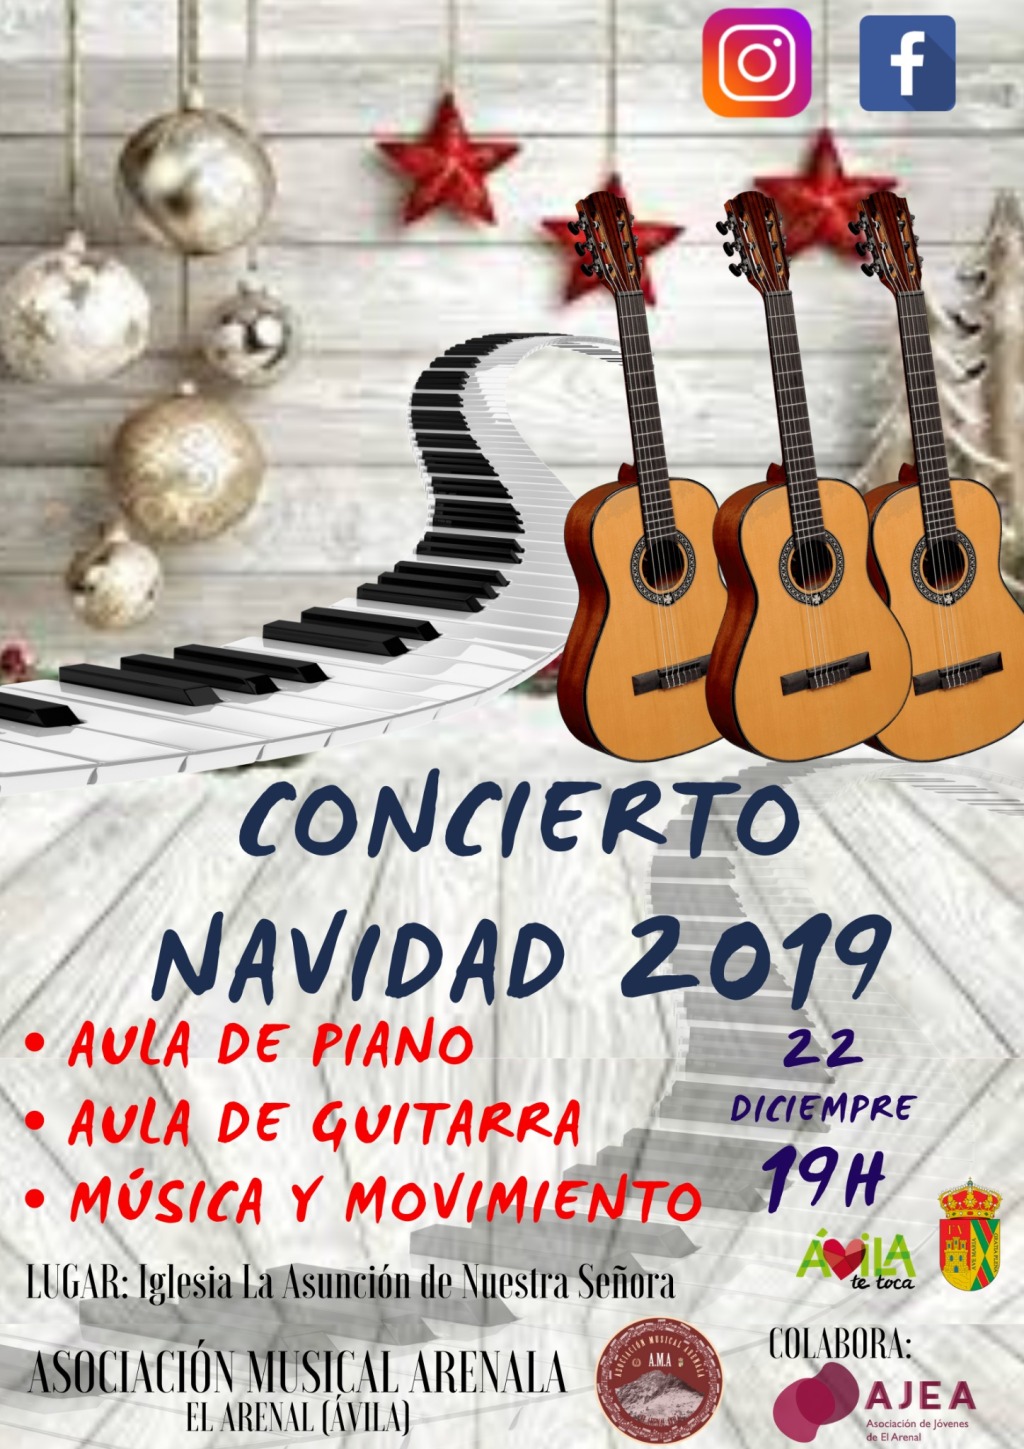 22 Dic: Concierto de Navidad 2019 en #ElArenal